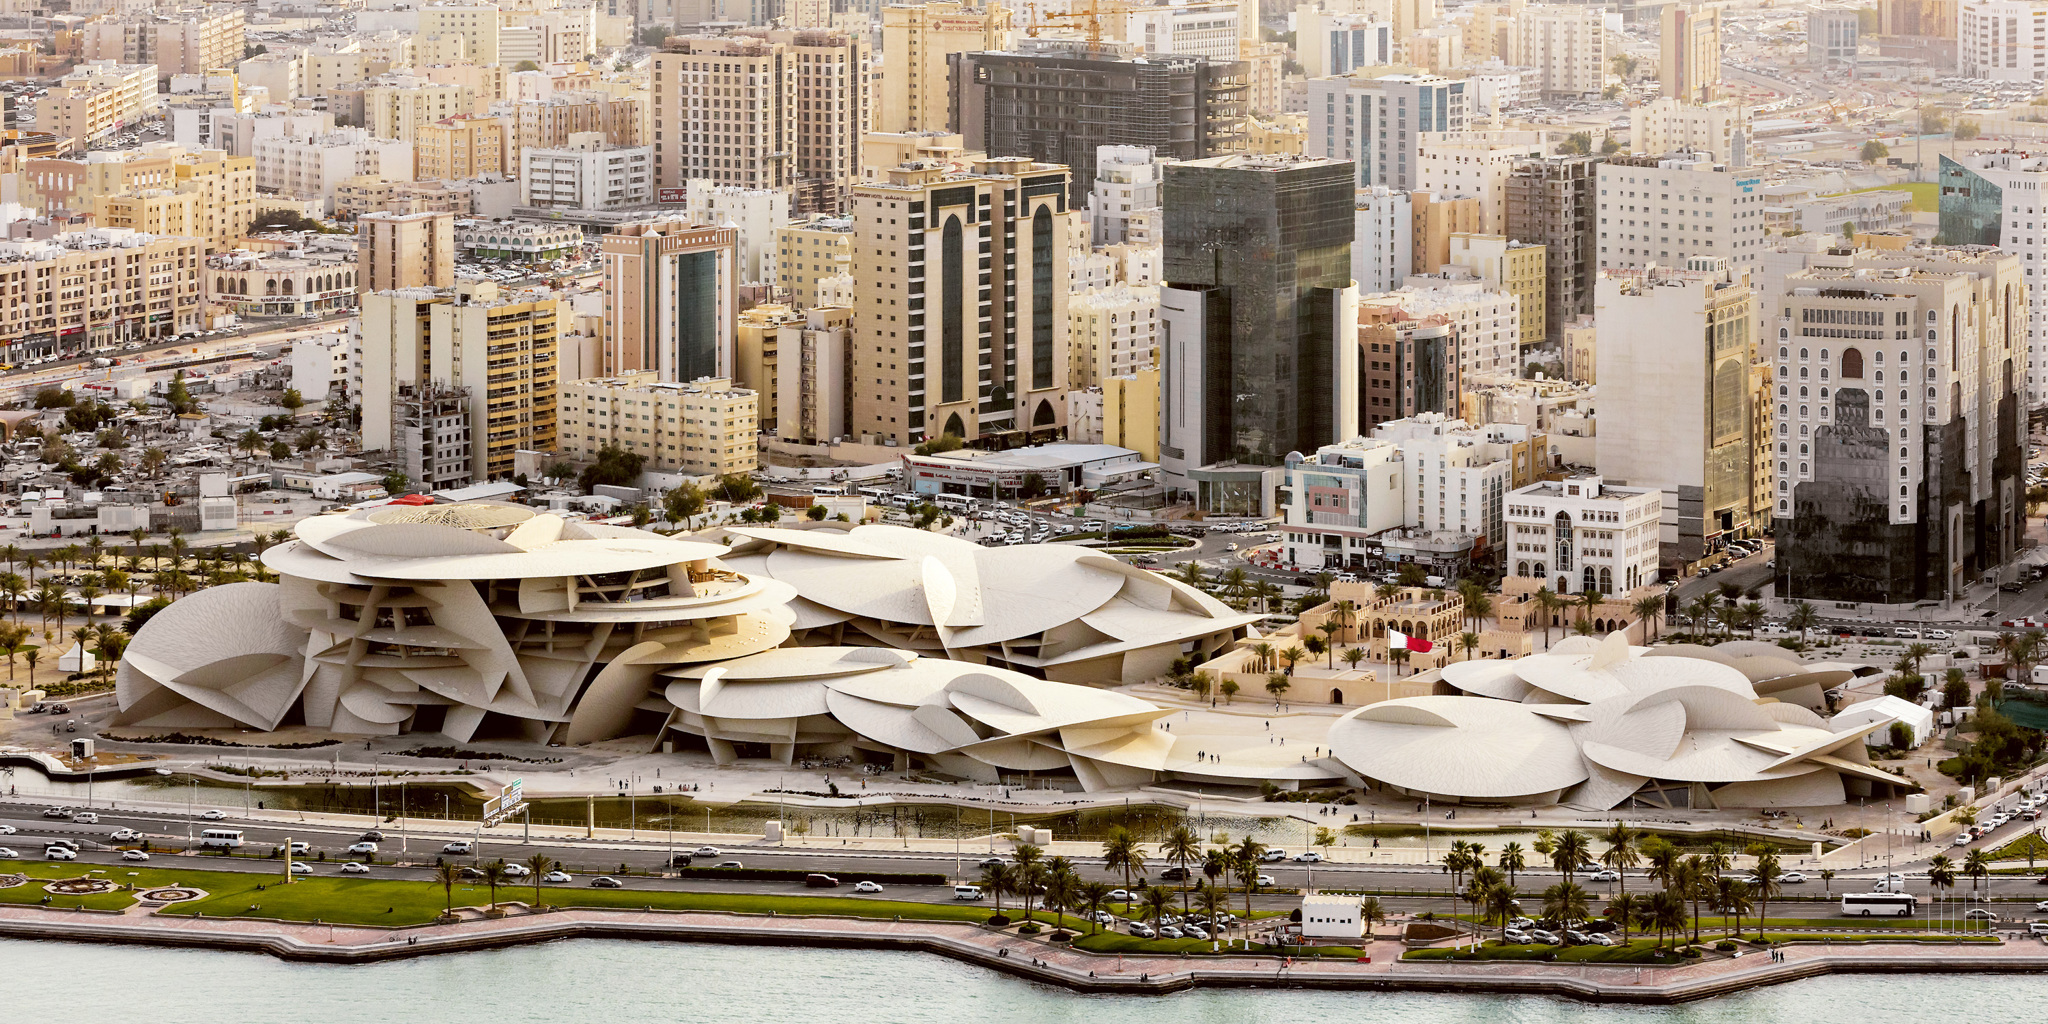 More information about "Τα αρχιτεκτονικά ορόσημα στο Κατάρ που χτίστηκαν με αφορμή Παγκόσμιο Κύπελλο Ποδοσφαίρου"